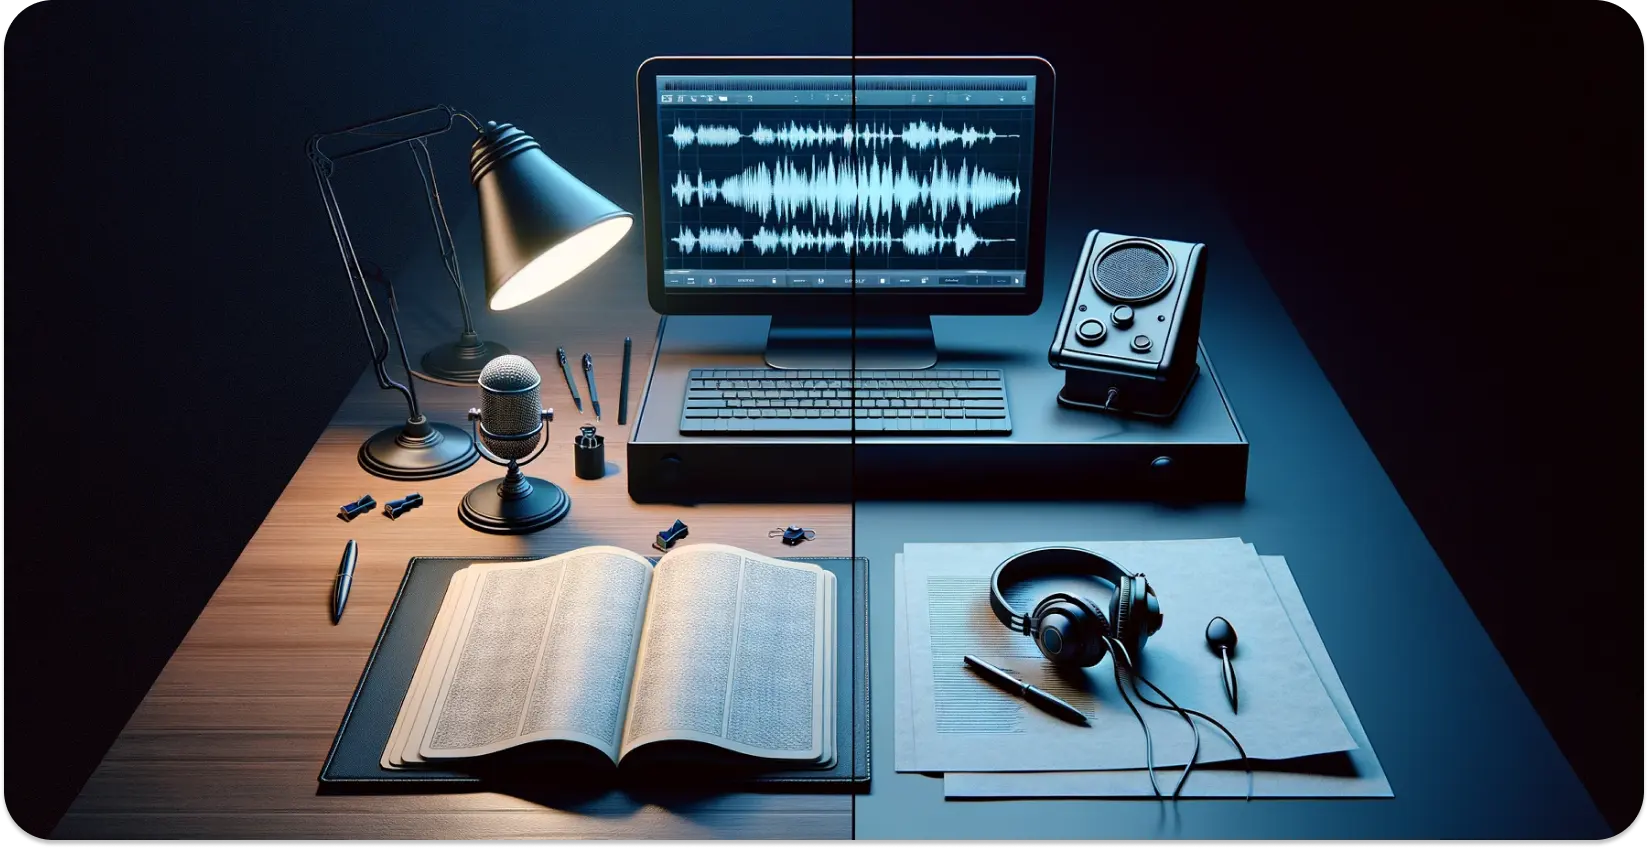 Moderní přepisovací sestava s mikrofonem, otevřenou knihou a křivkou na obrazovce monitoru.